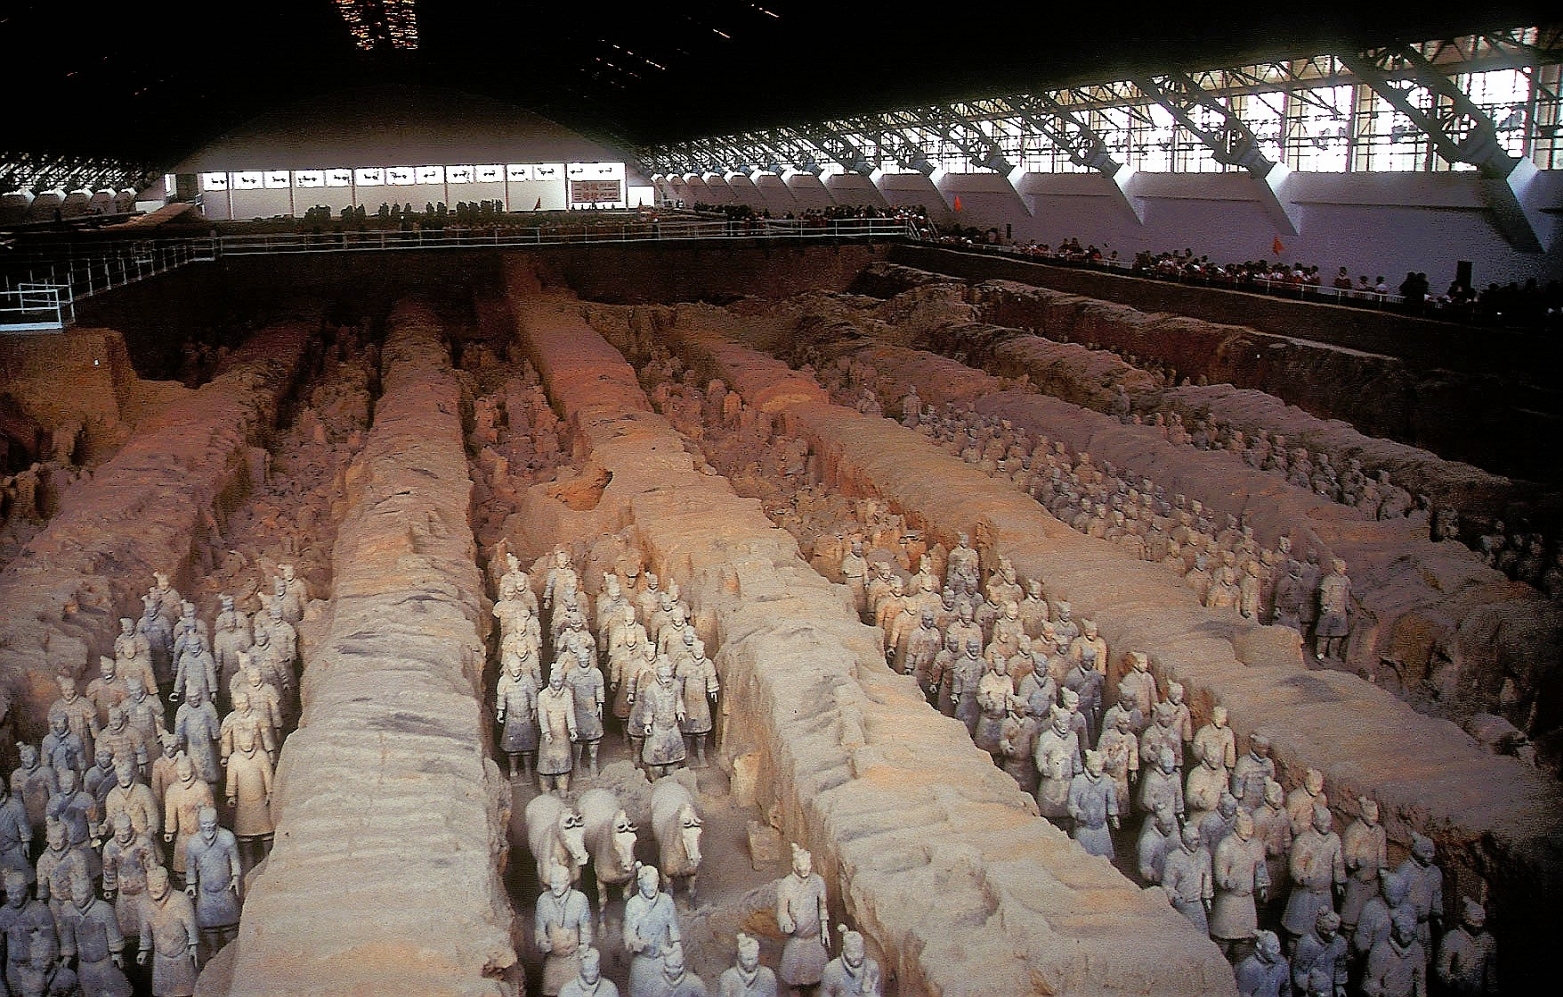 Armée de terre cuite - 8000 statues de soldats et chevaux en terre cuite 210-209 AEC) - près de Xi'an - Shaanxi - Chine